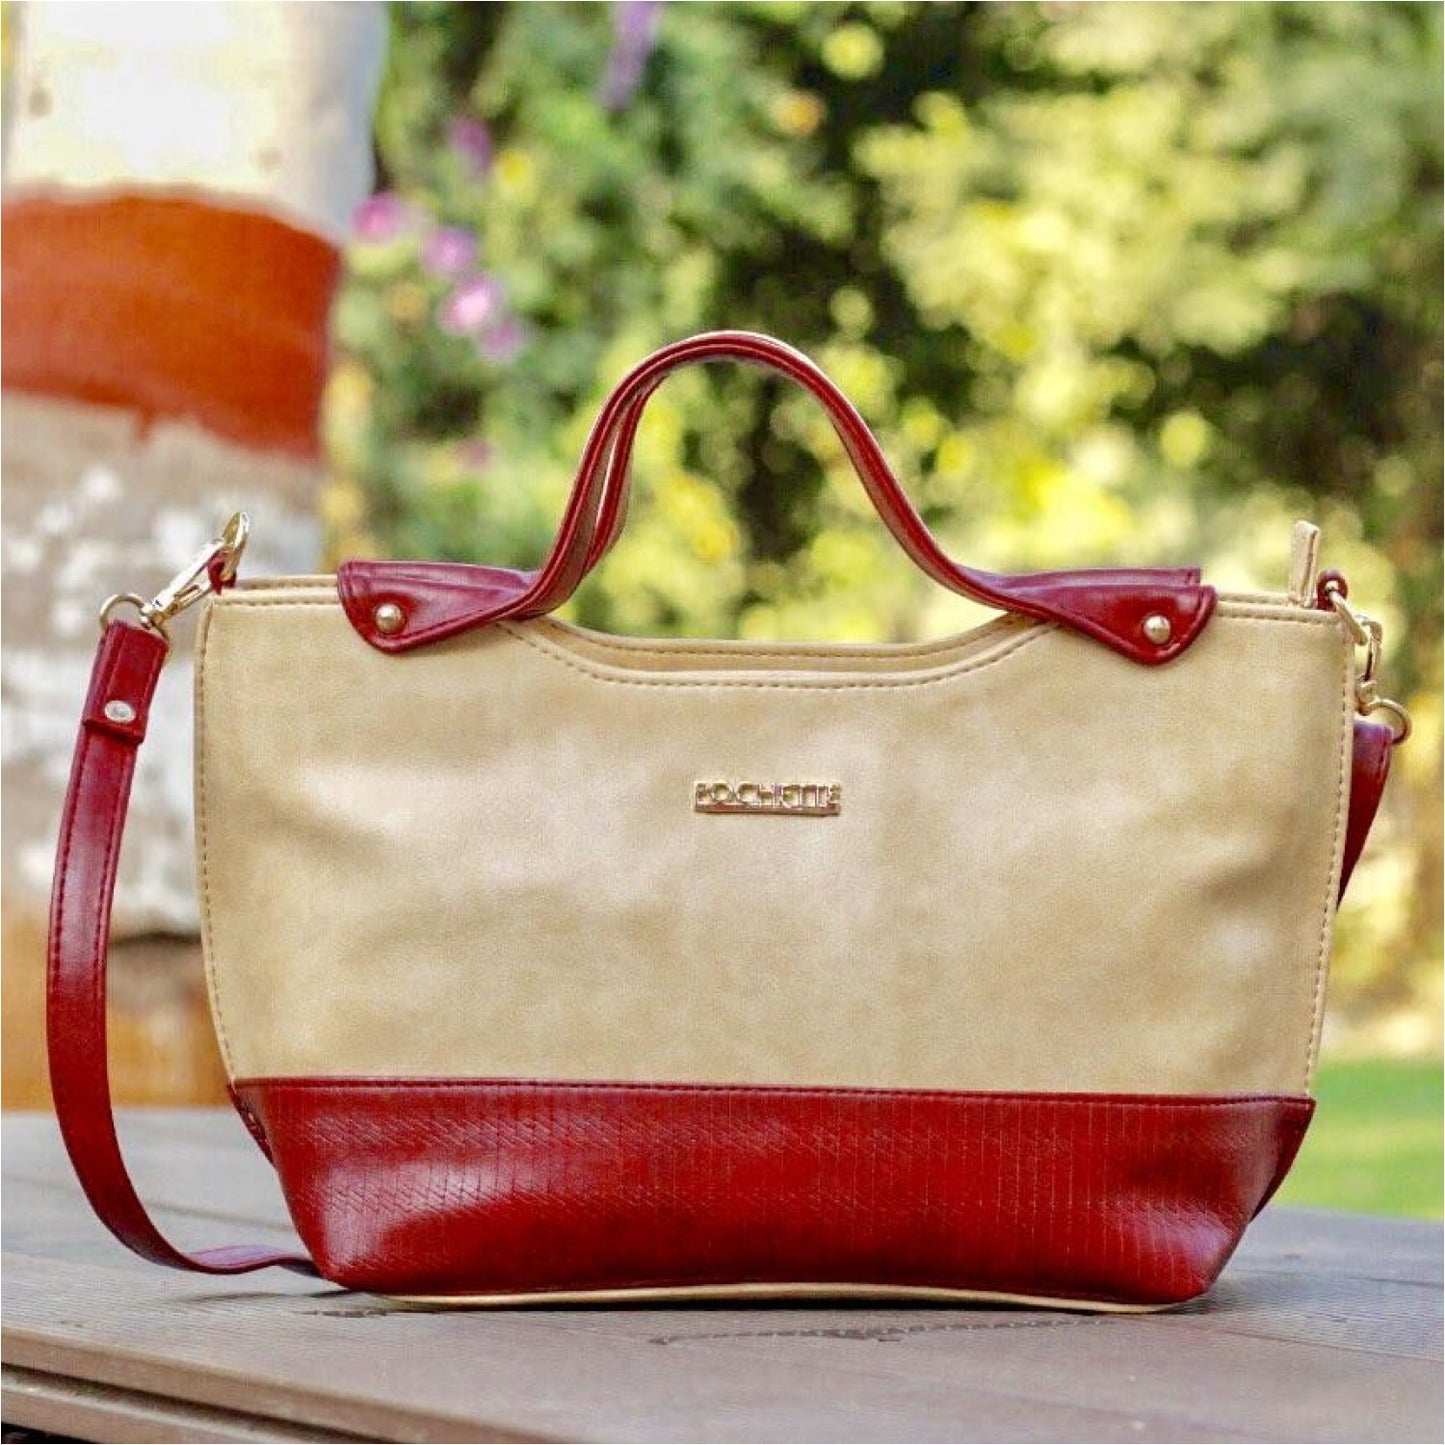 Pochette Crimson Boat Handbag. - HANDBAGS